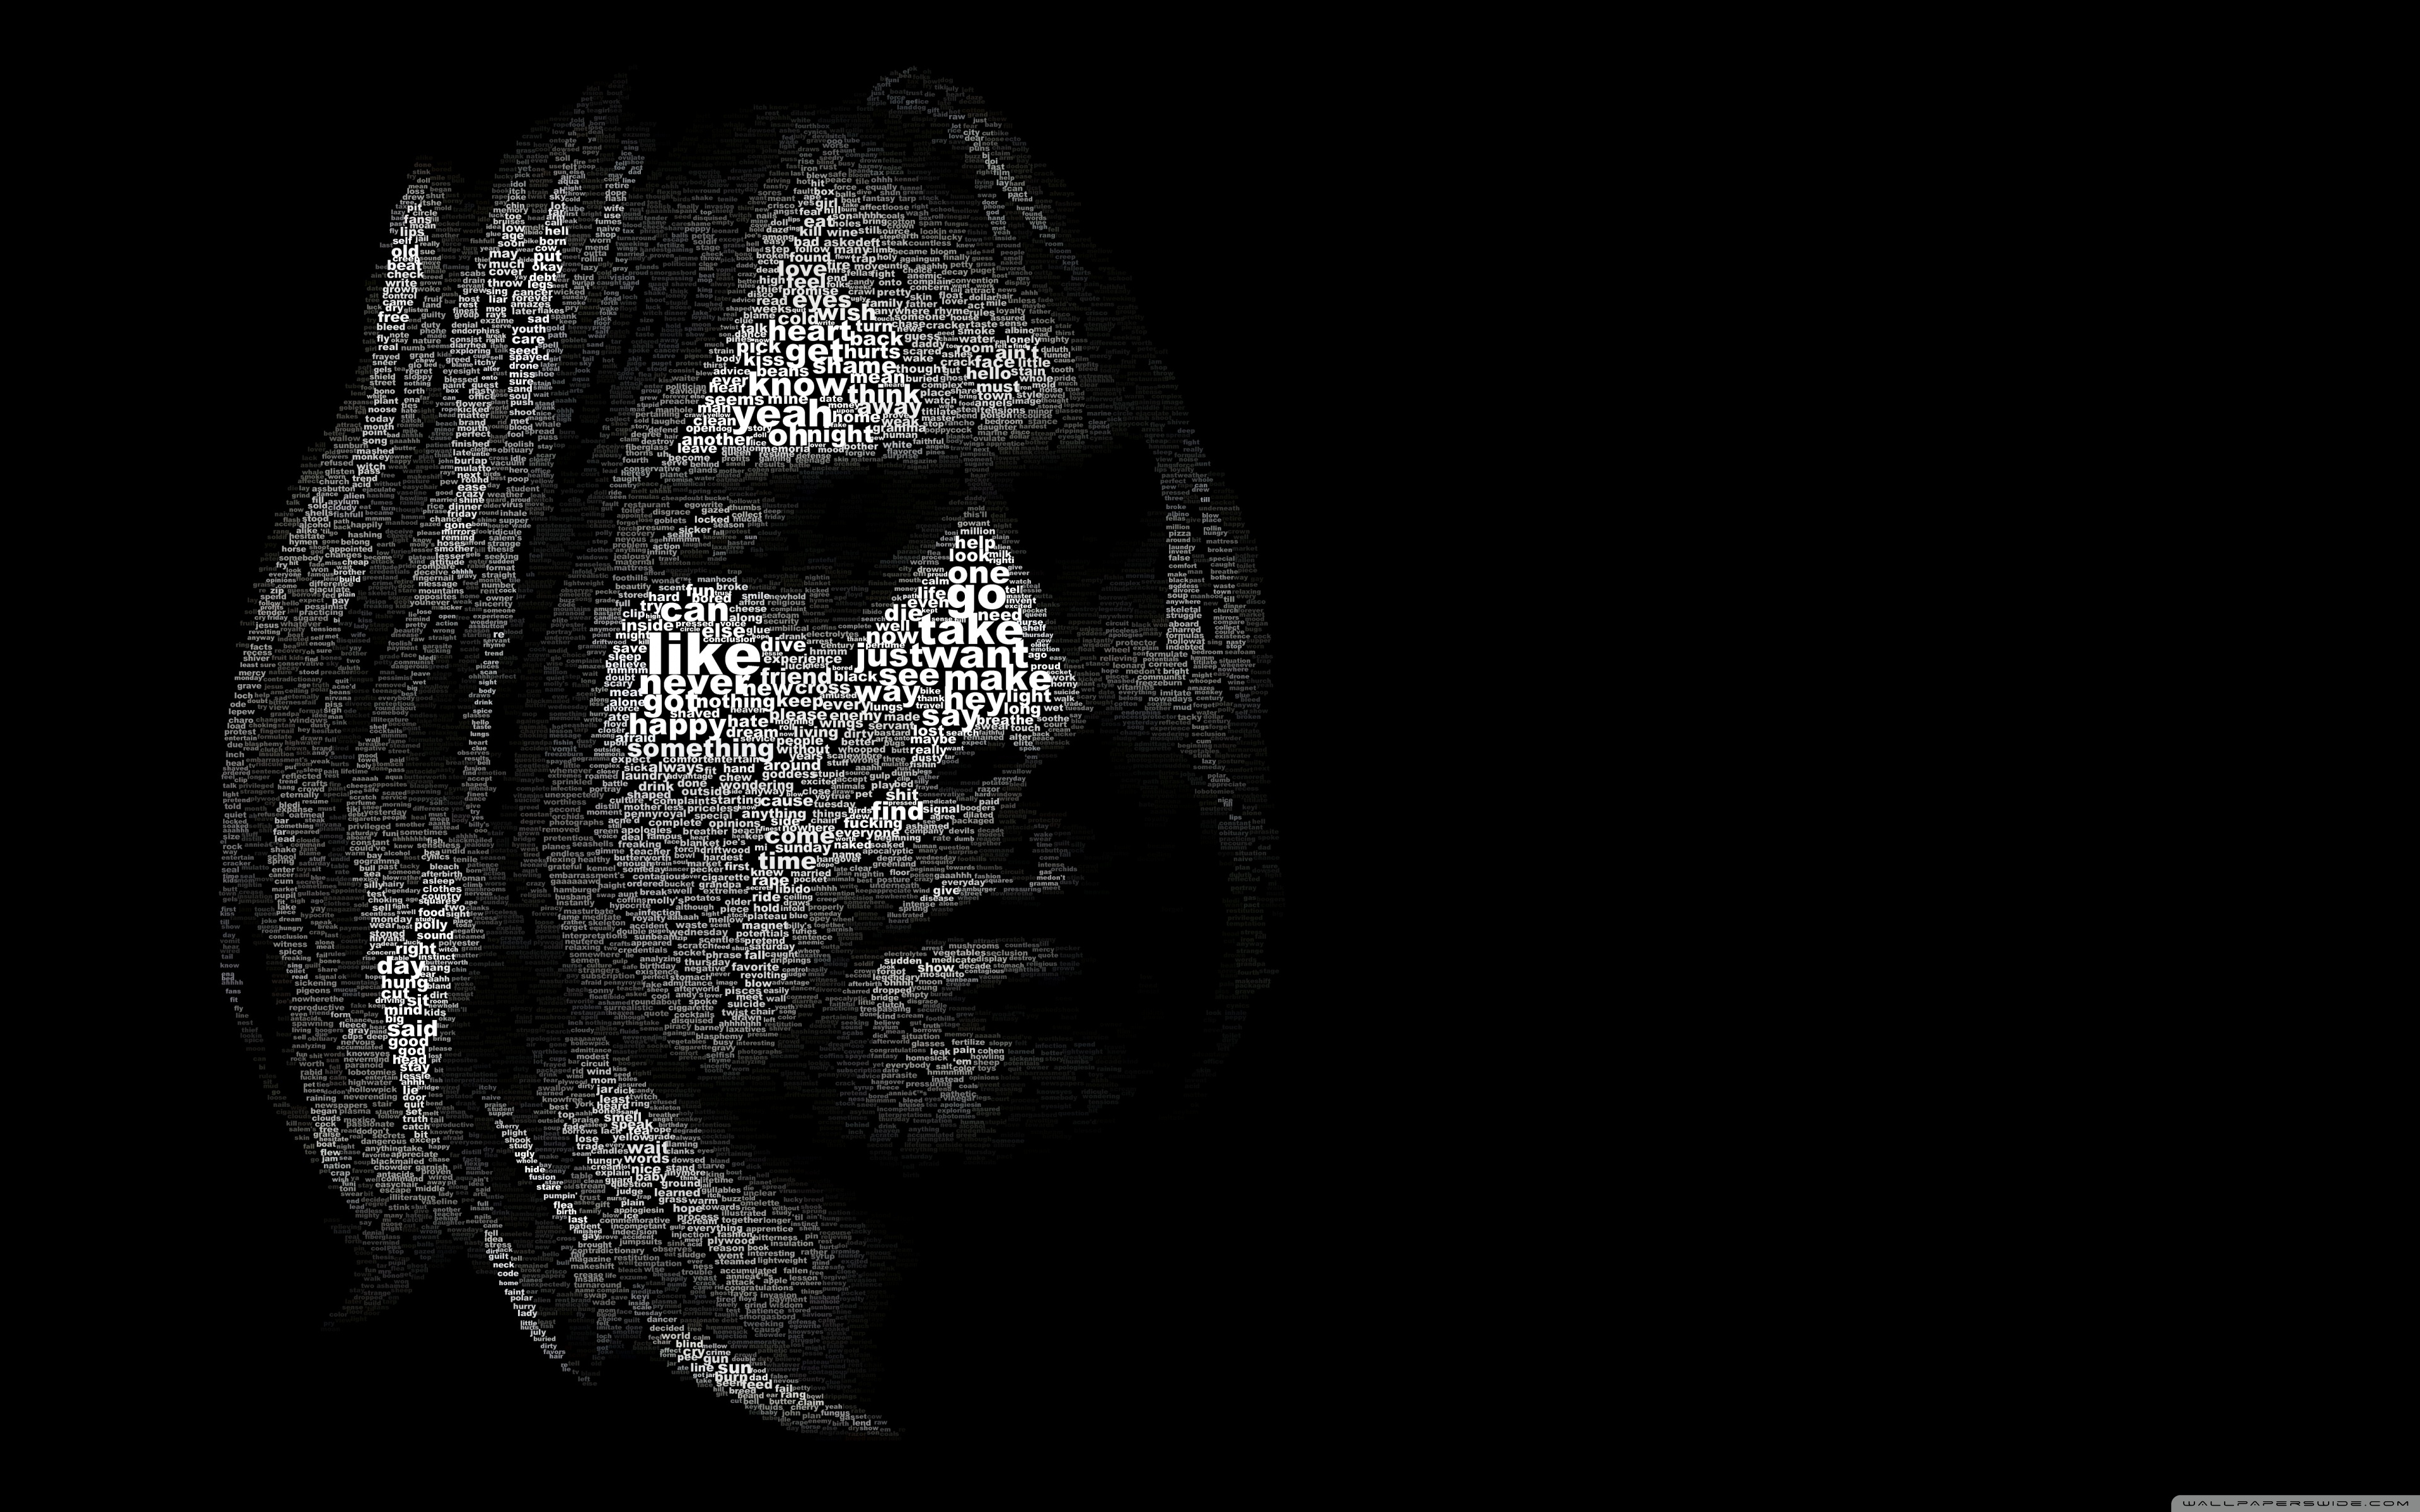 Download 21 kurt-cobain-wallpaper-hd Kurt-Cobain-wallpapers-HD-for-desktop-backgrounds.jpg